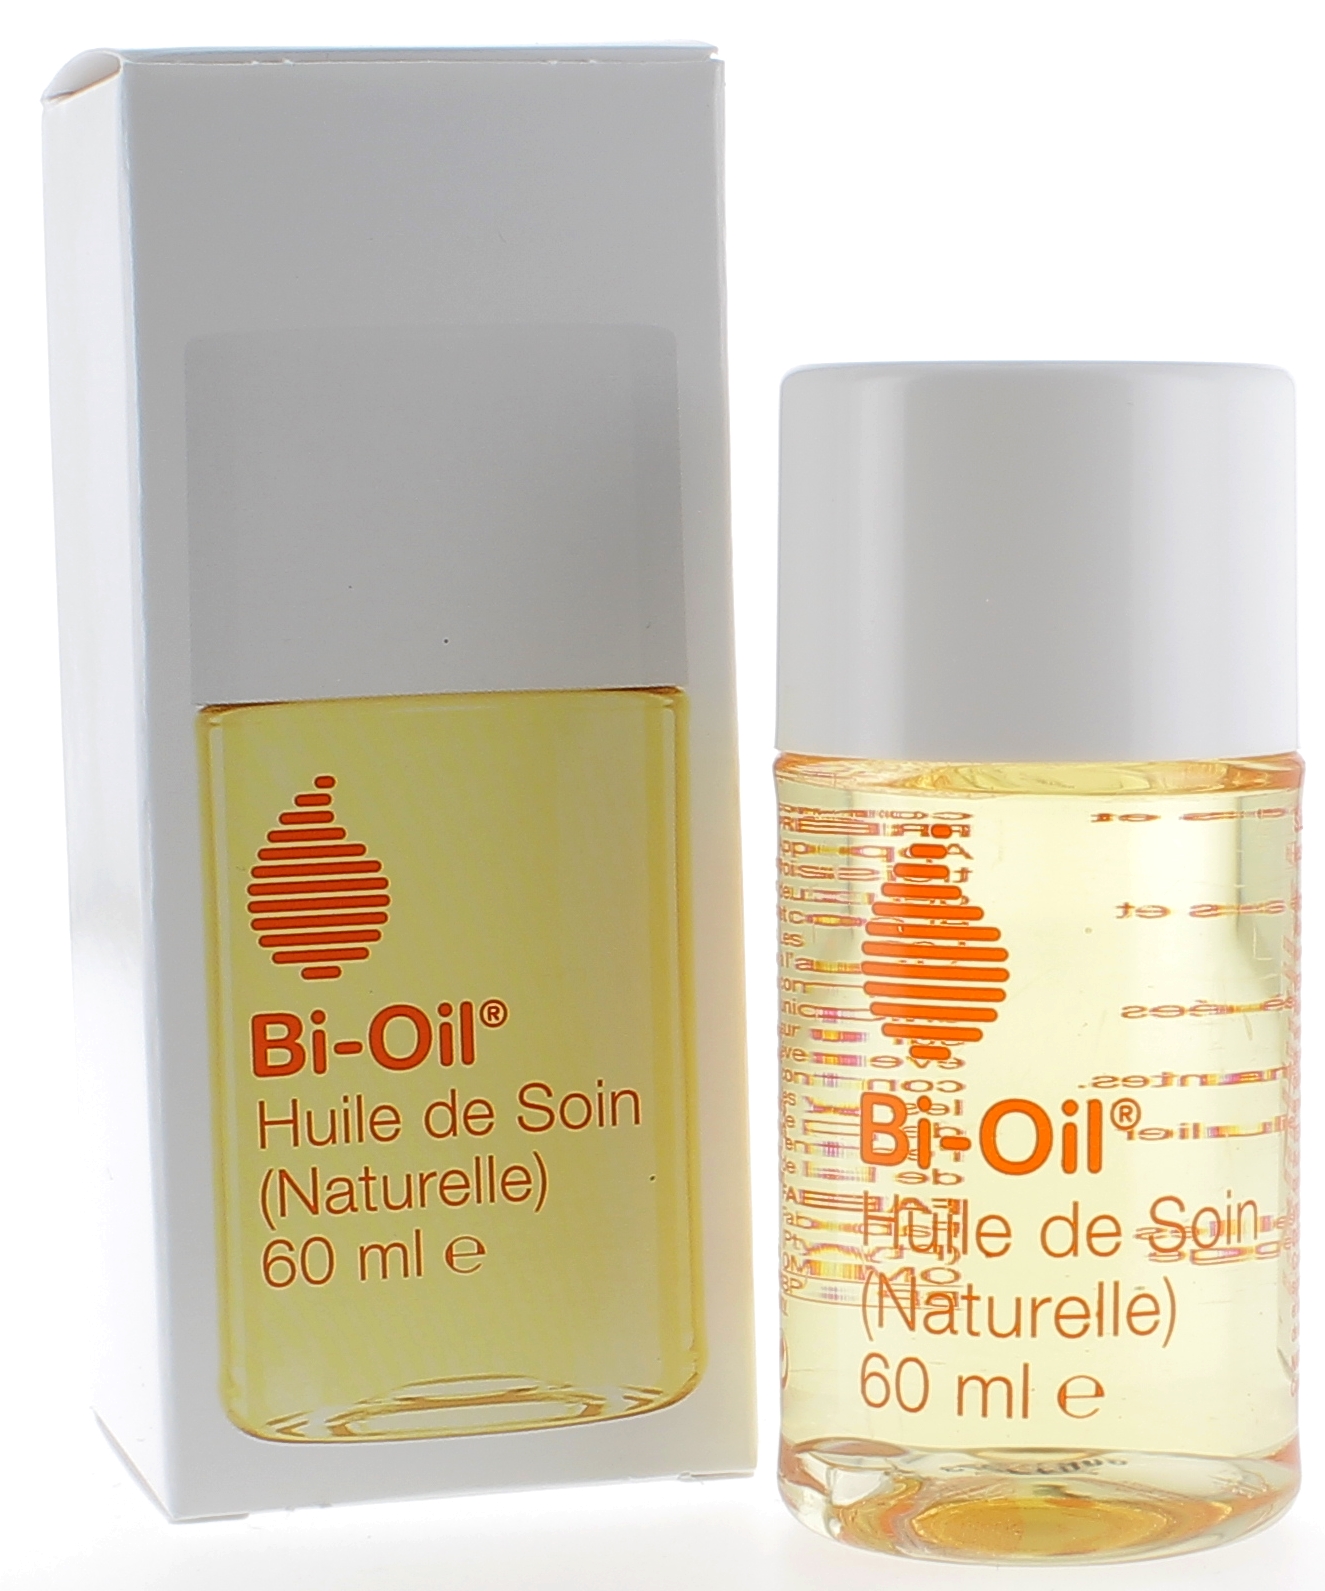 https://www.pharmashopi.com/images/Image/Bi-Oil-huile-de-soin-naturelle-flacon-de-60-ml-600115912.jpg